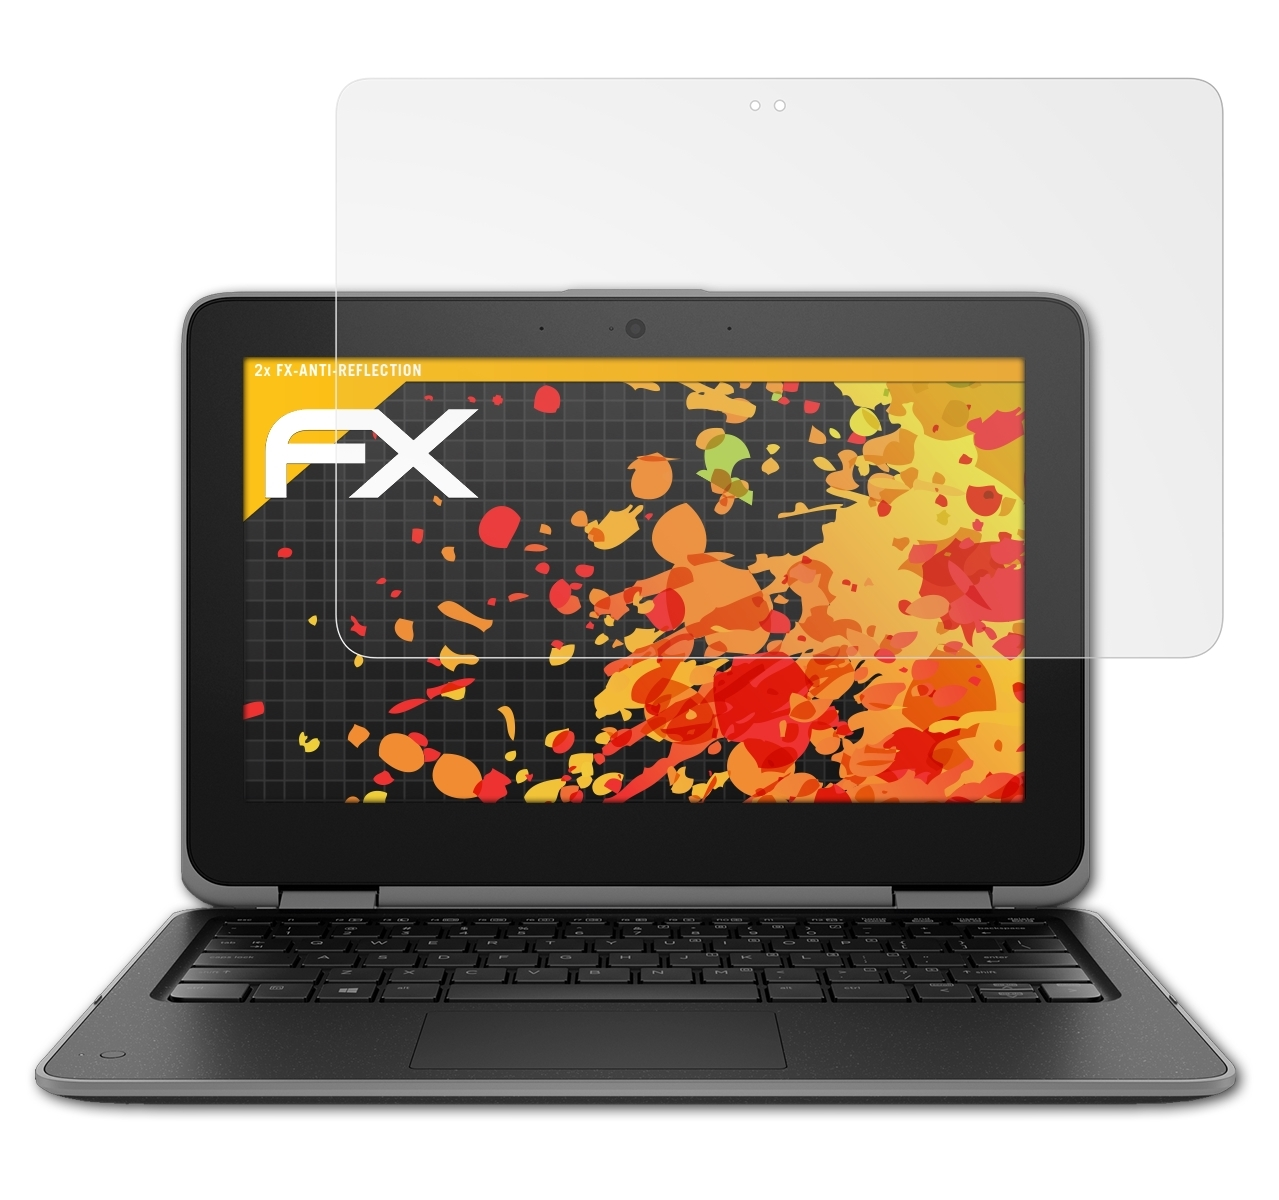 HP x360 FX-Antireflex ProBook EE) G3 2x ATFOLIX 11 Displayschutz(für